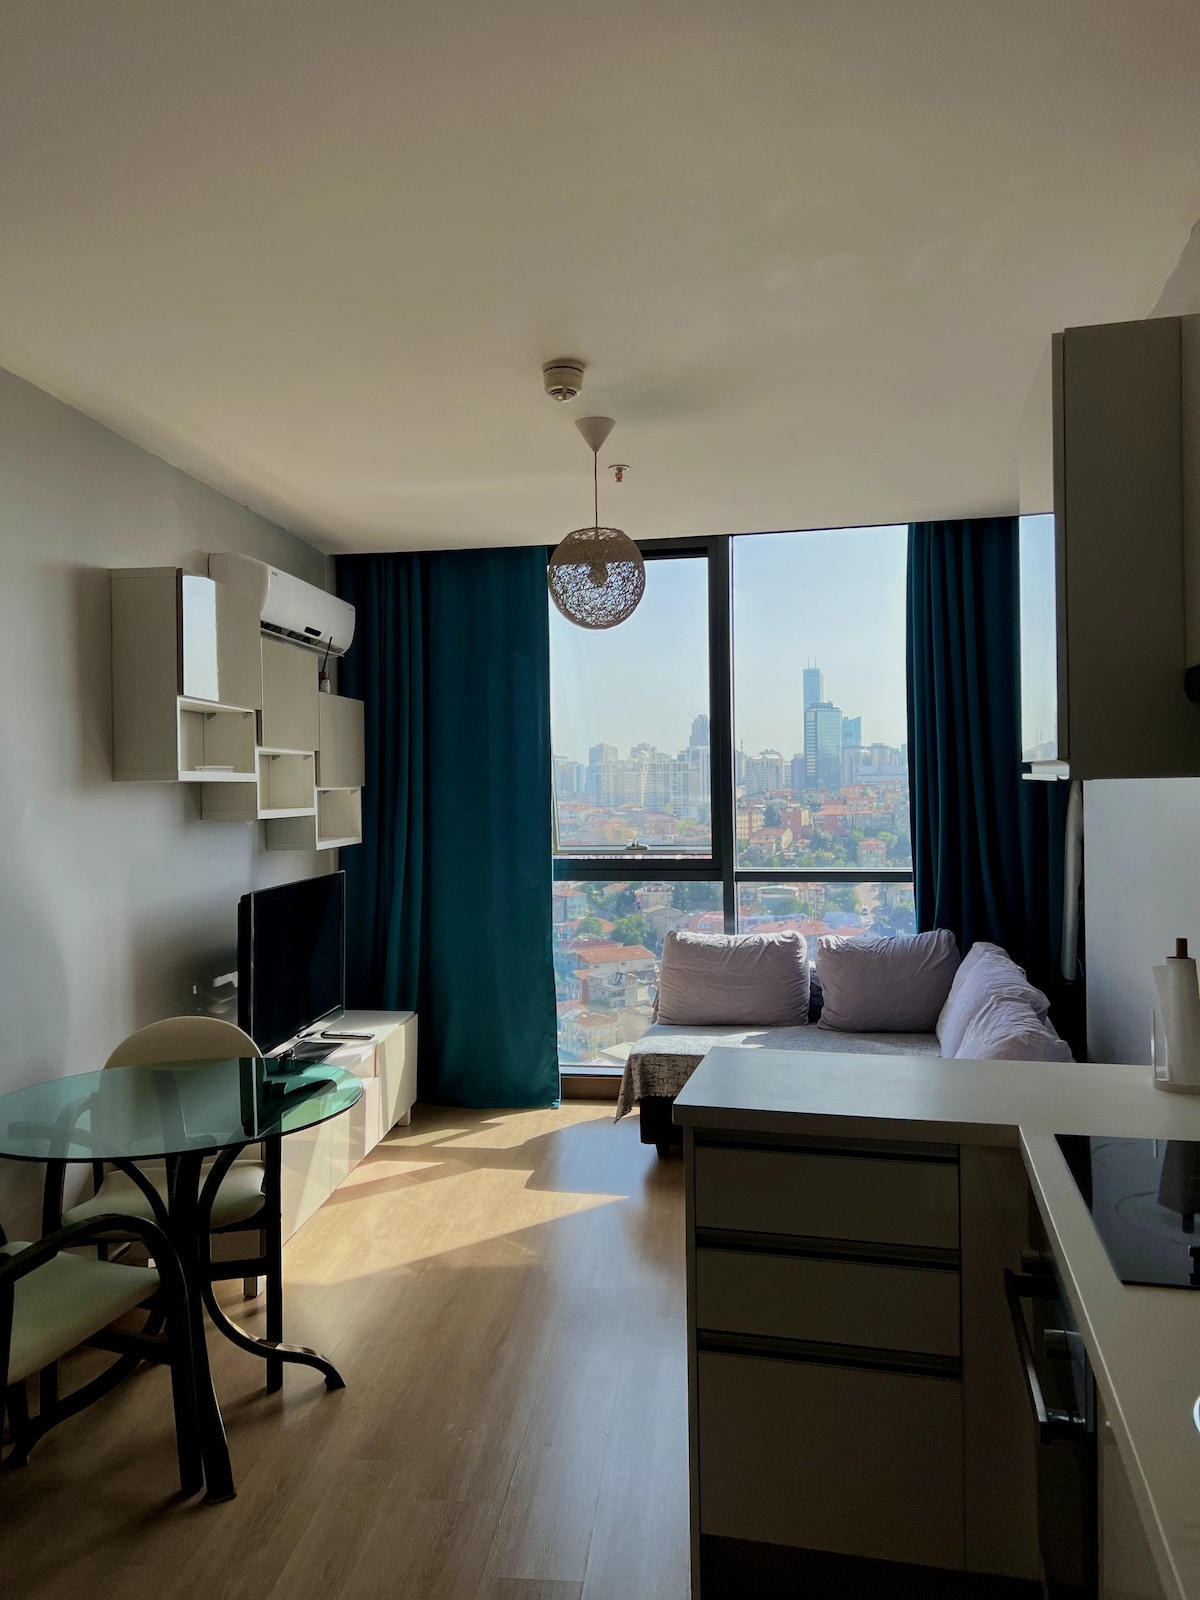 伊斯坦布尔全景高层公寓